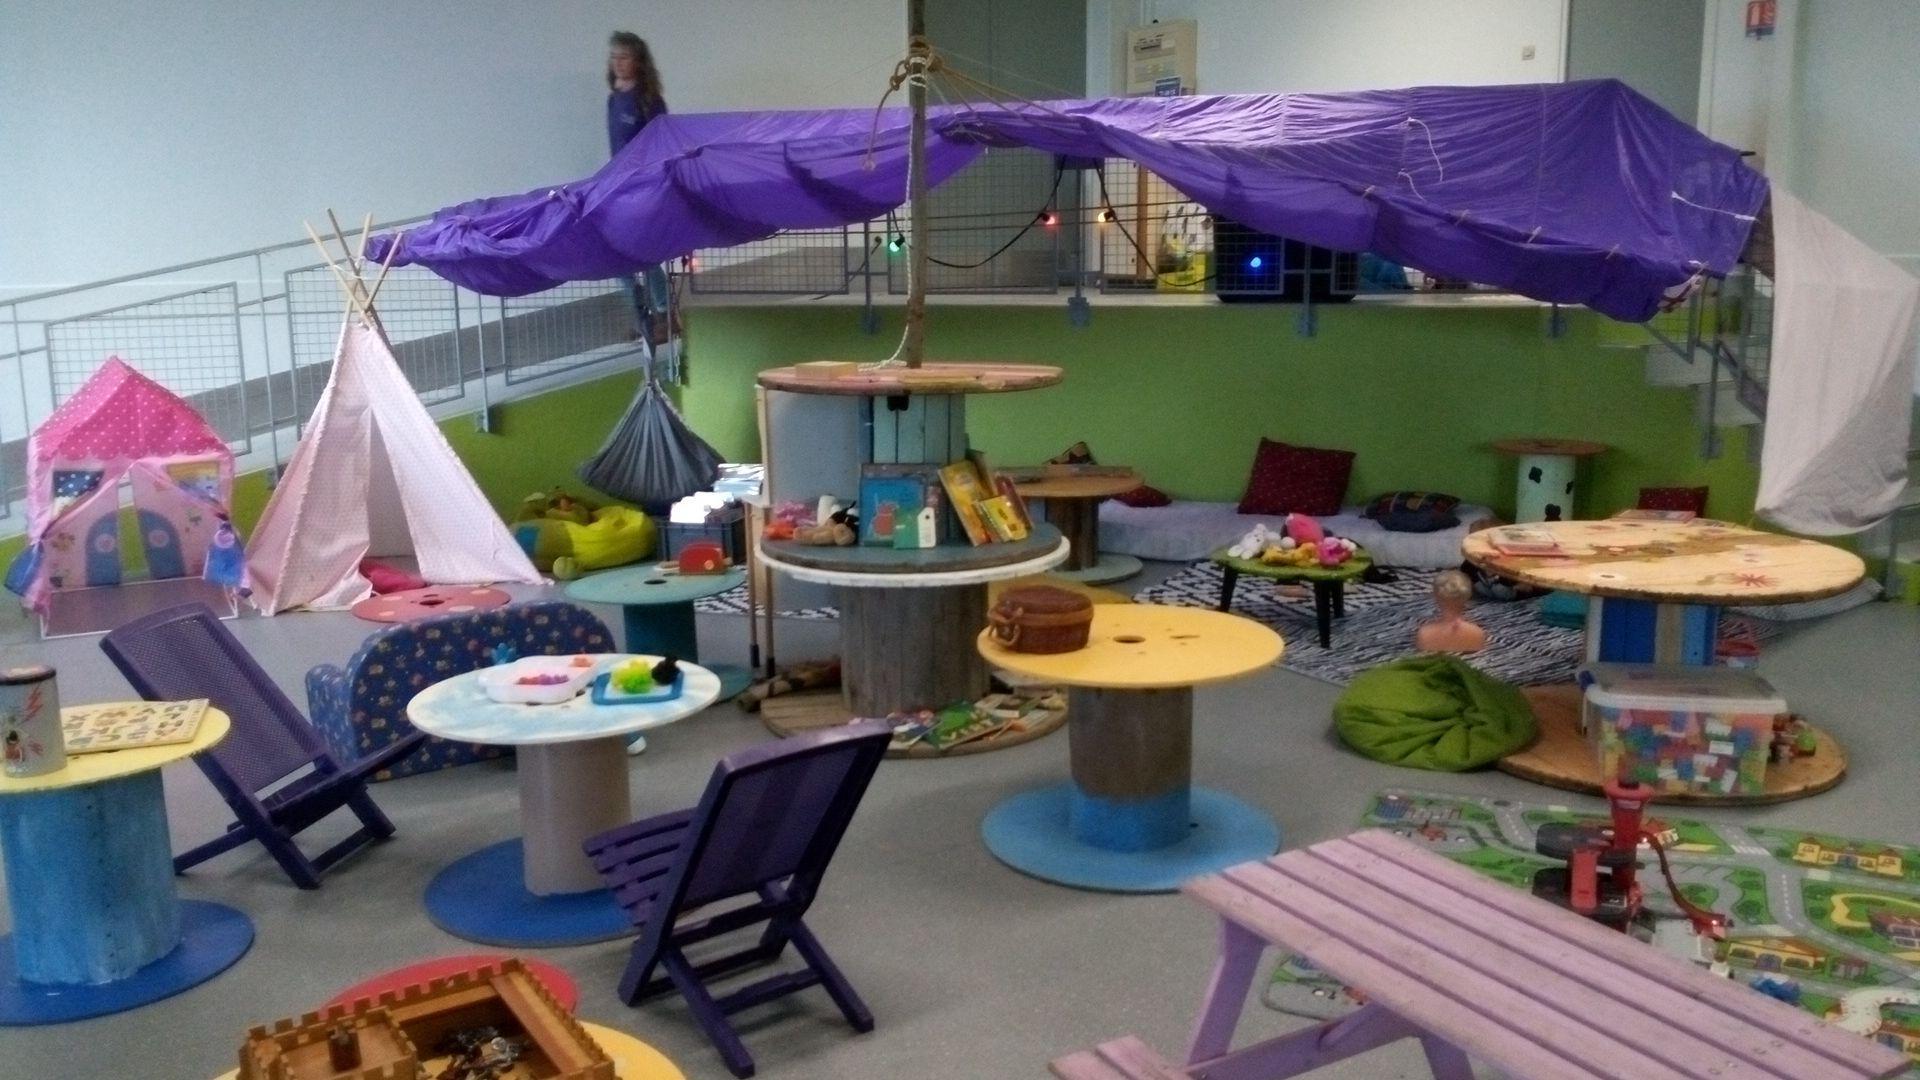 L'espace garderie "La bassine à bulles" s'installe à Melle pour accueillir les enfants samedi à partir de 8h